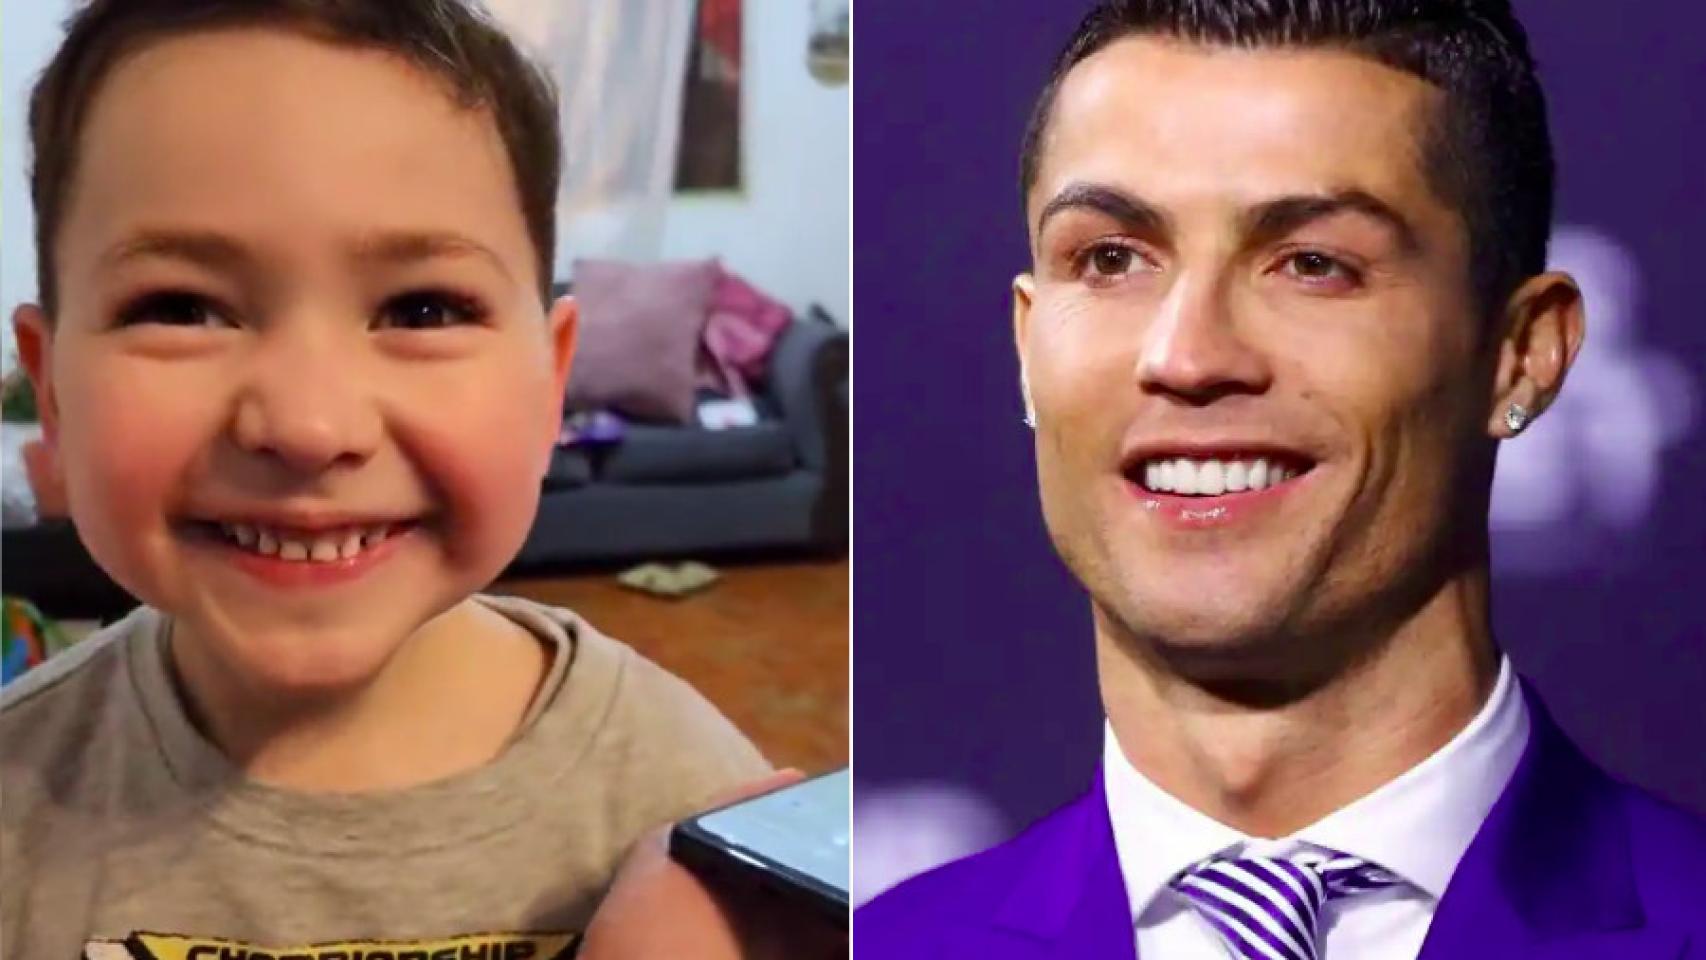 VIDEO: Niño realiza tierna imitación de la celebración de Cristiano Ronaldo